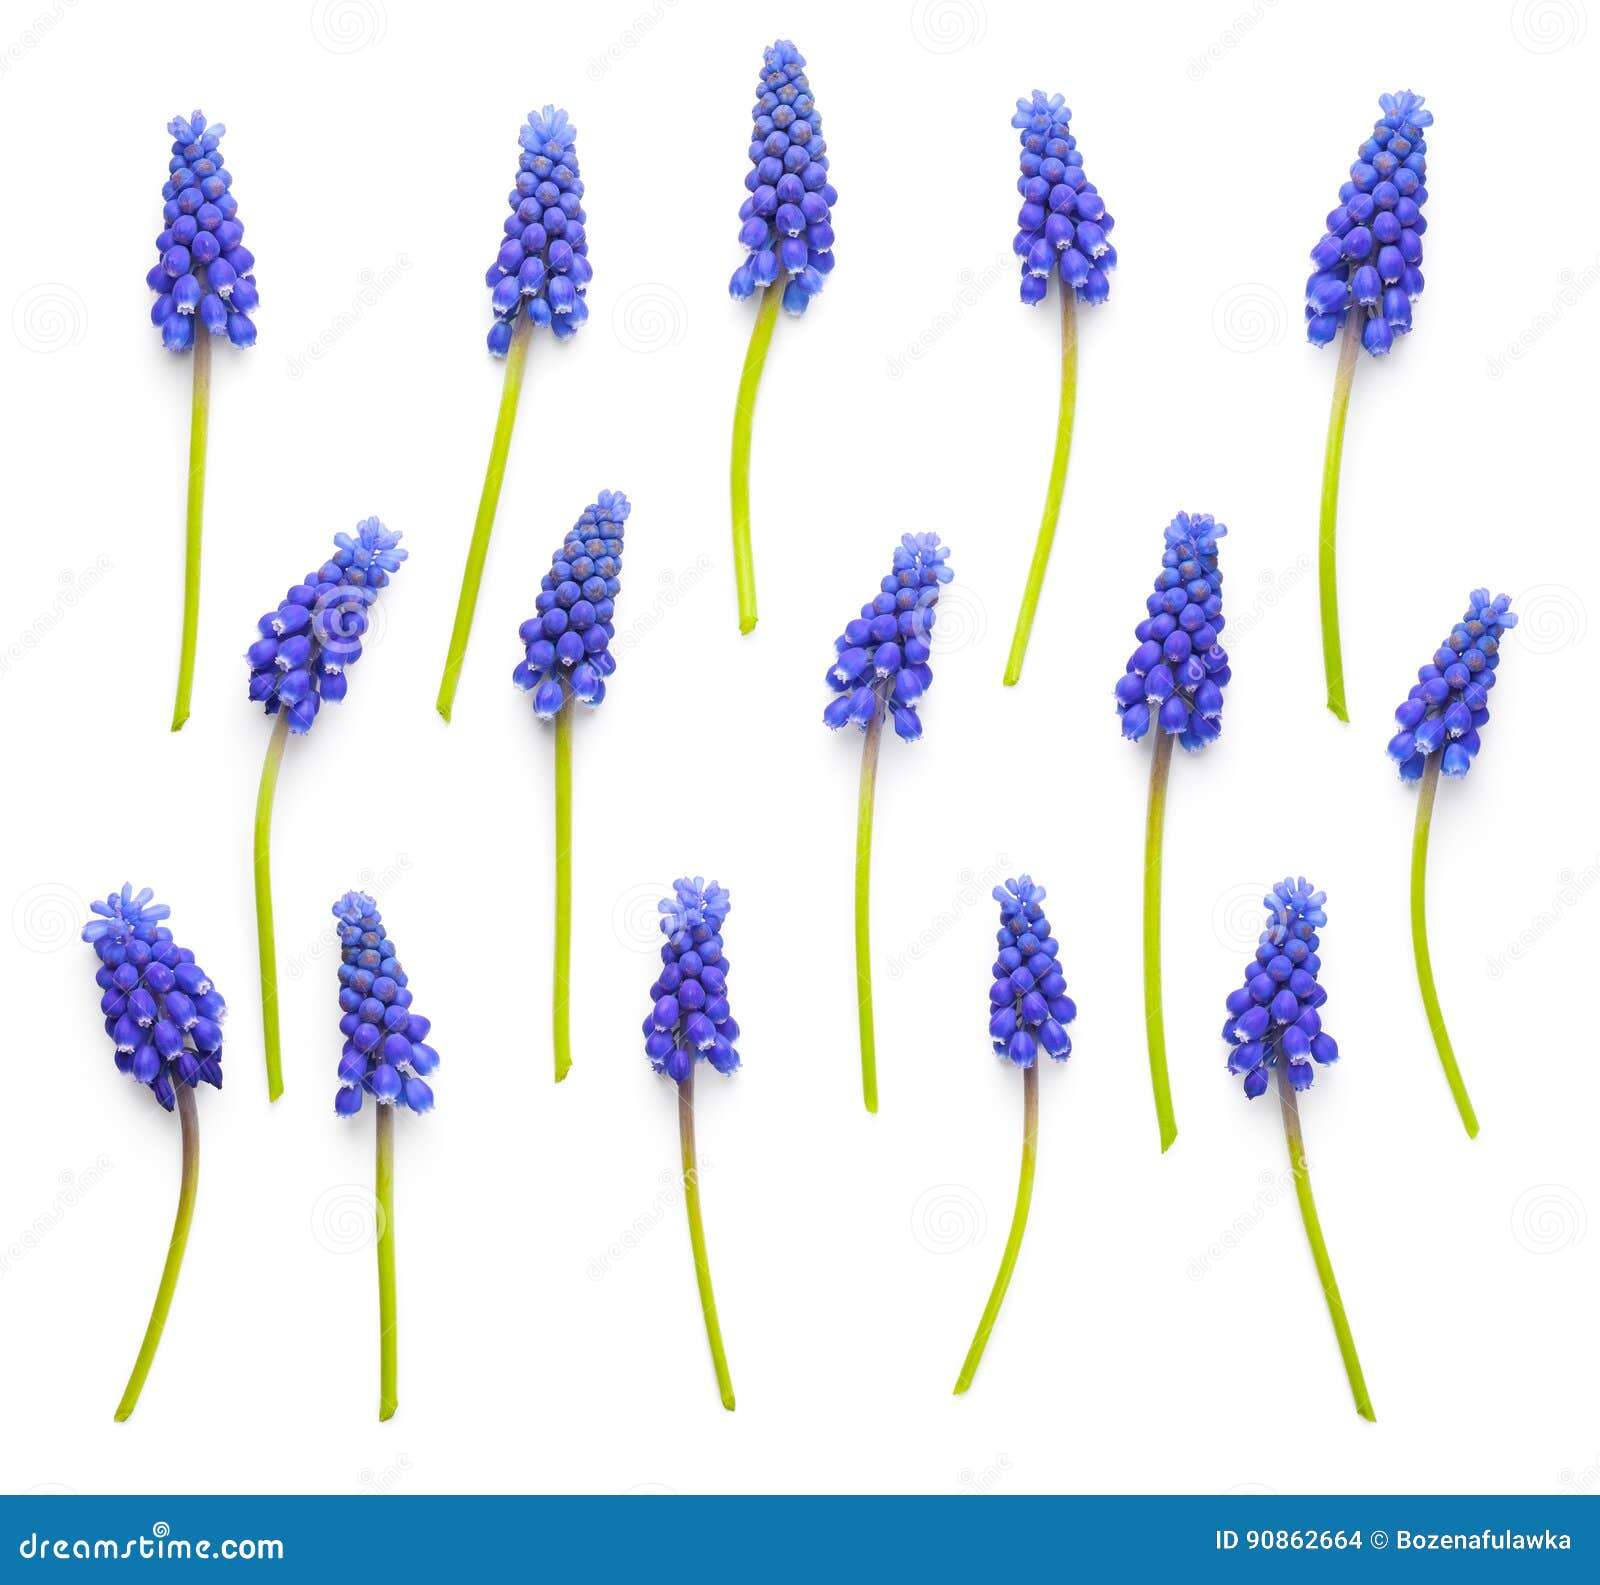 Muscari Flowers Isolated on White Background Stock Photo - Image of ...